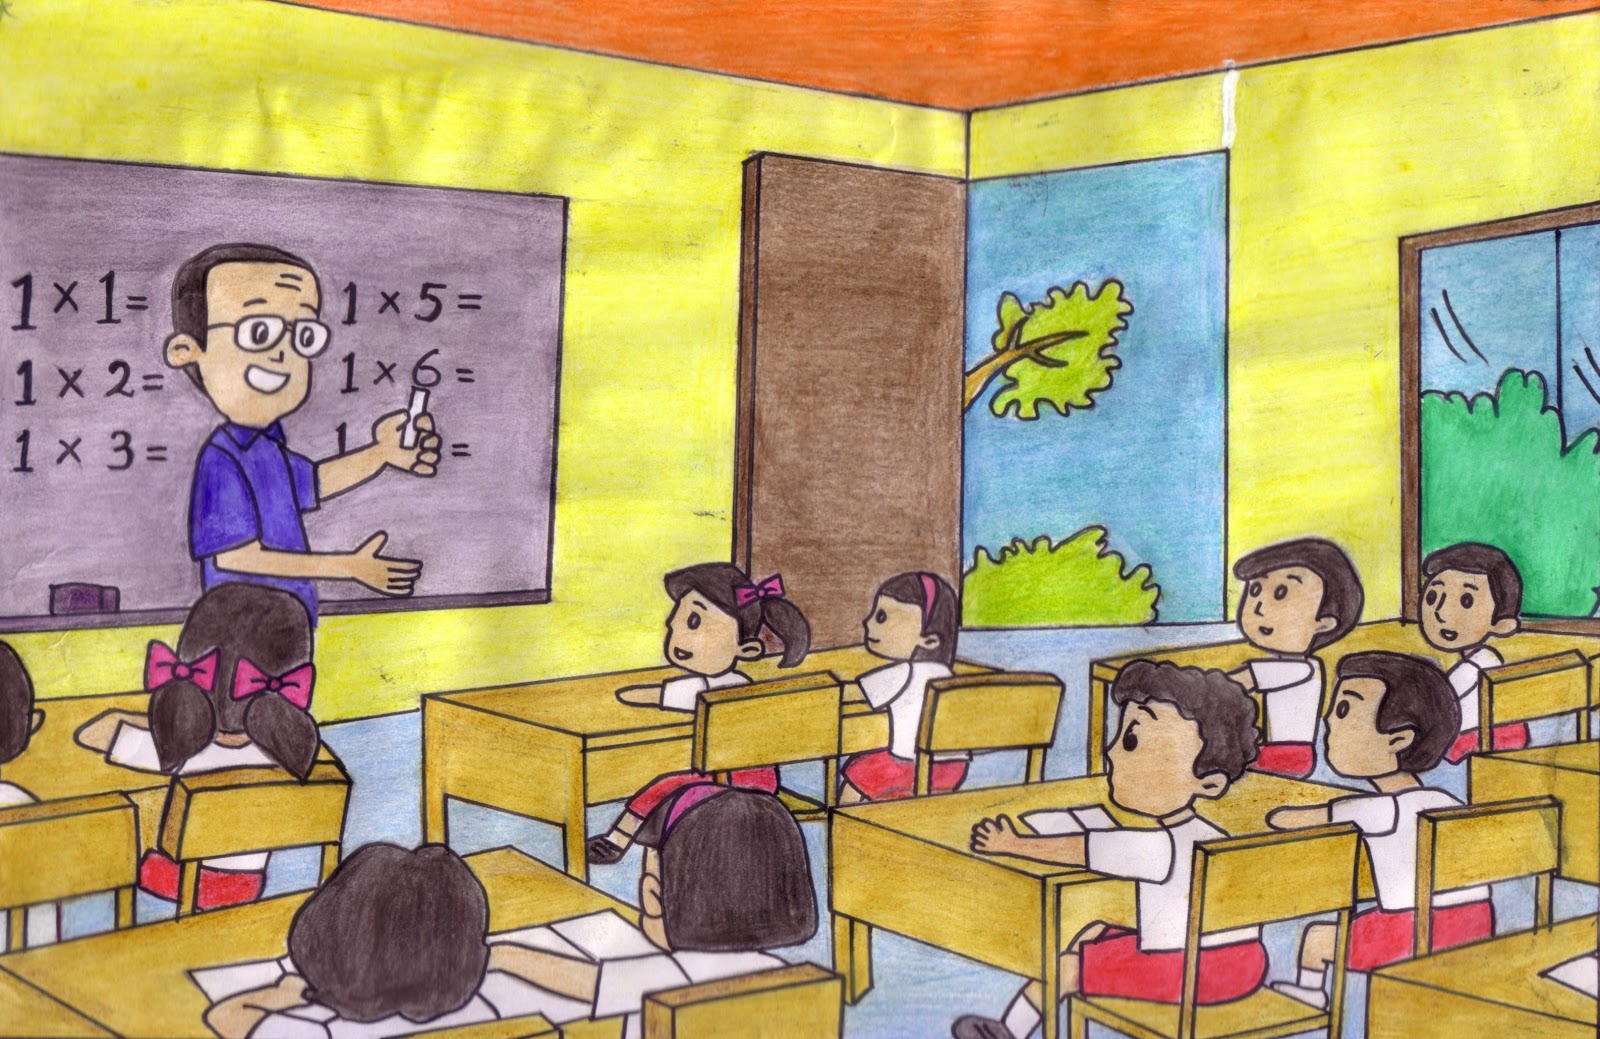 Gambar Kartun Anak Pulang Sekolah  Gambar  Gotong Royong Di Sekolah  Kartun  Bestkartun